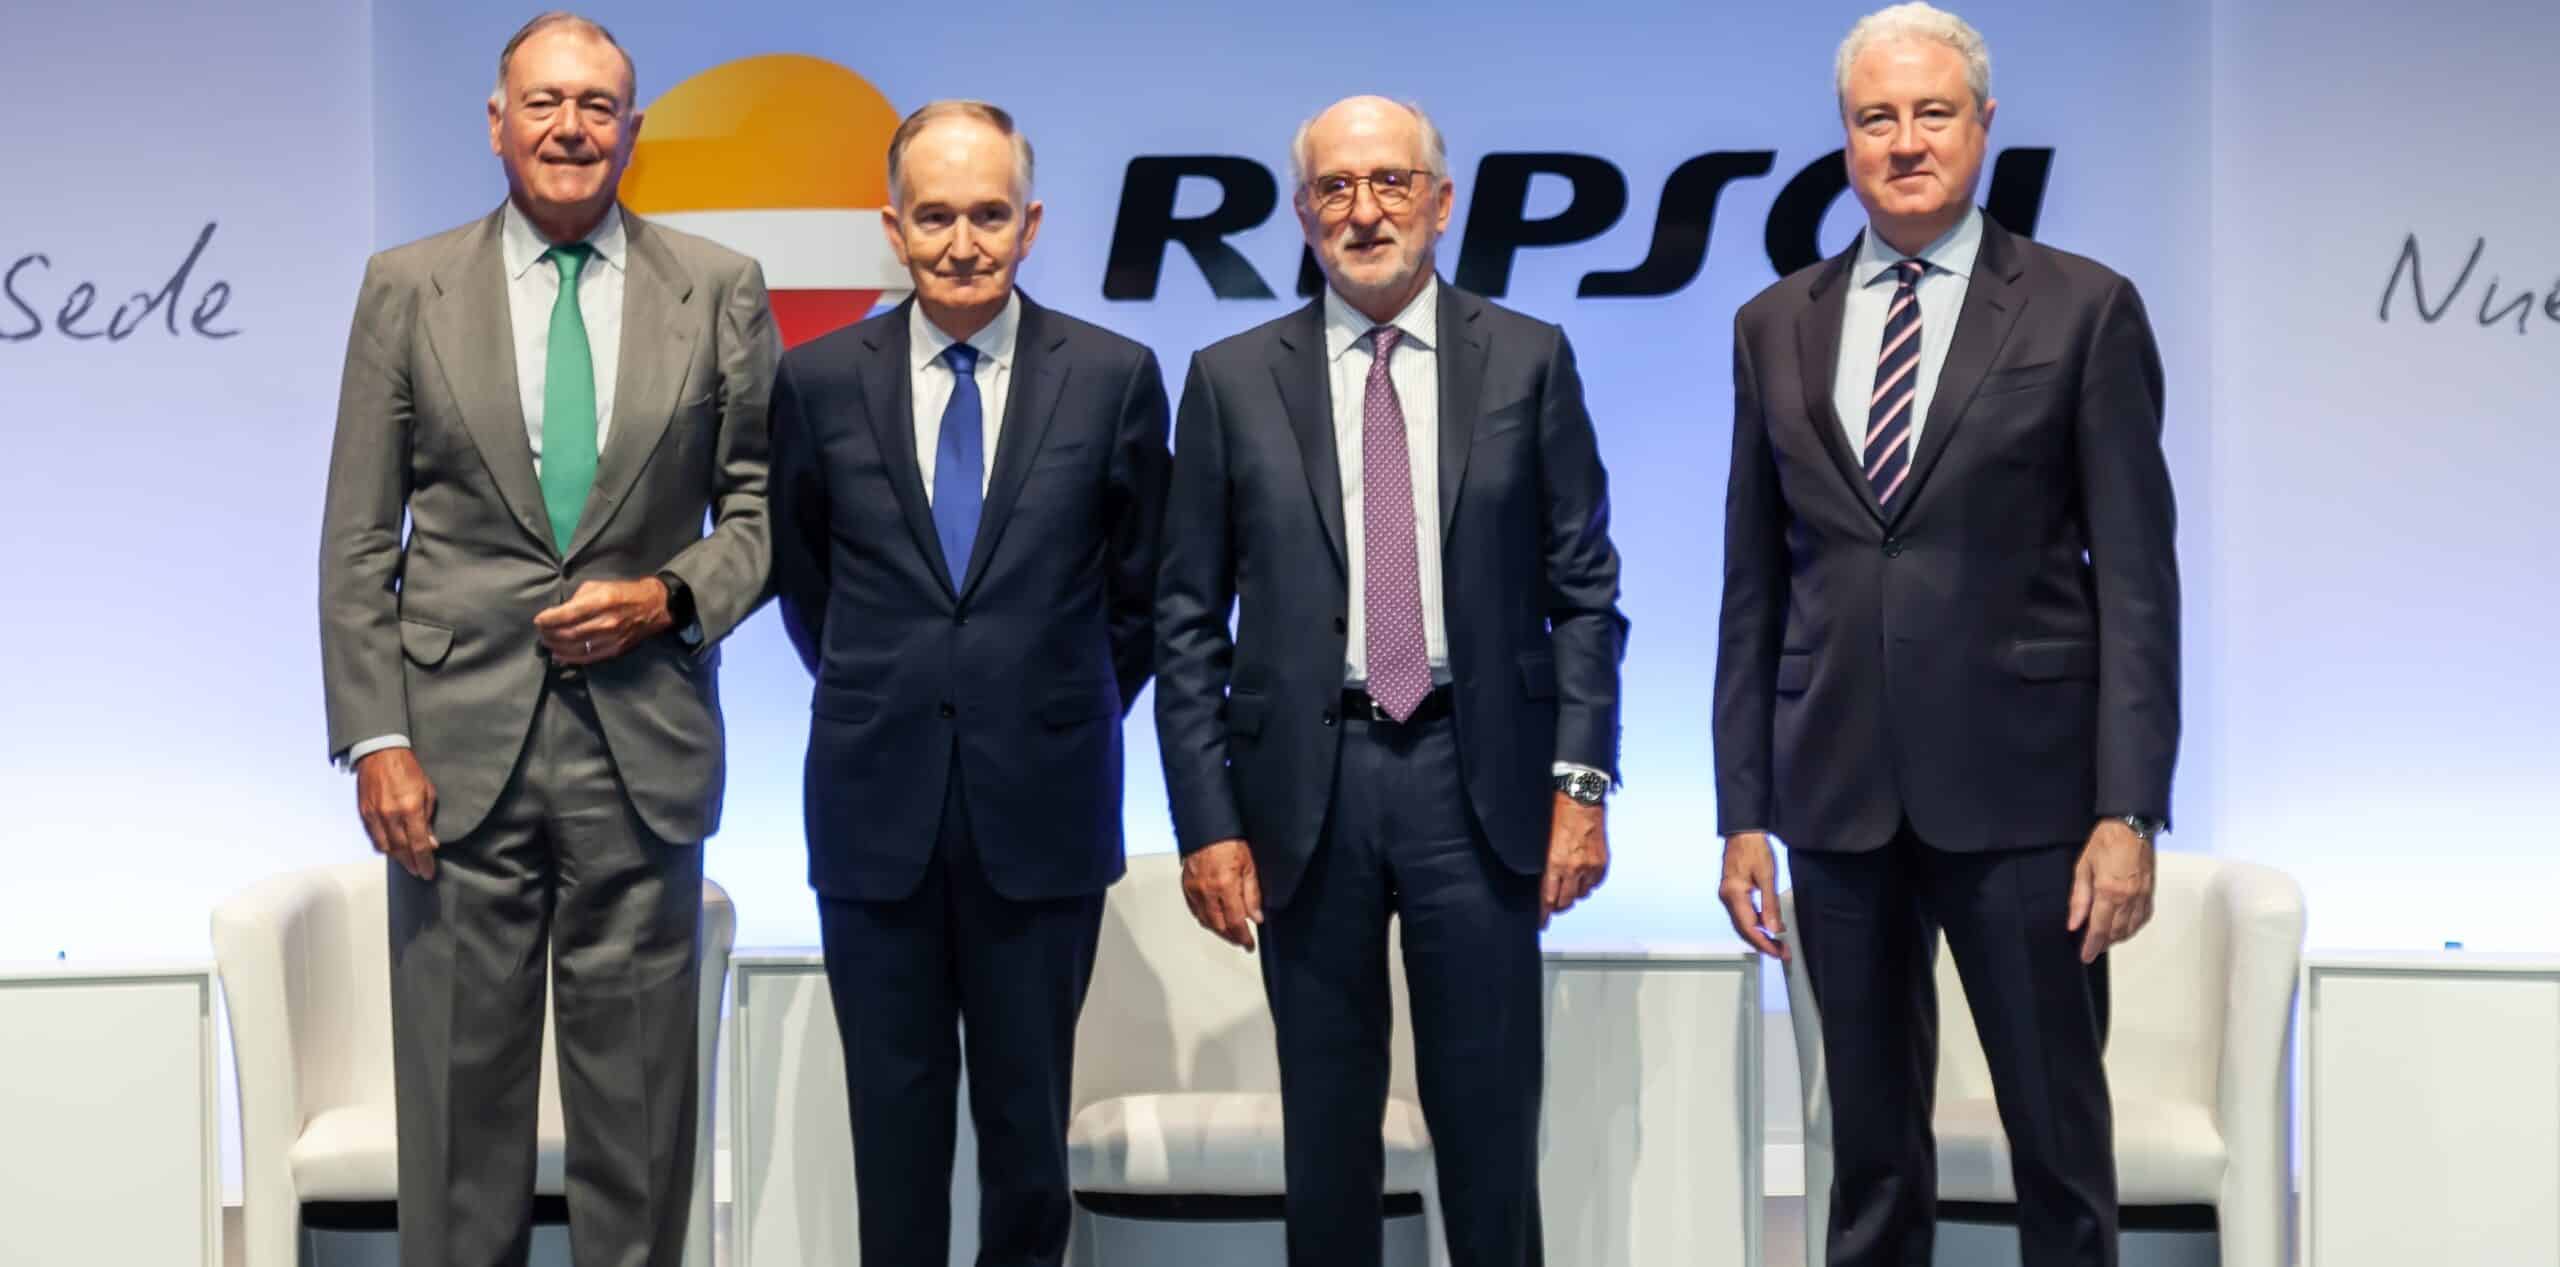 Brufau, presidente de Repsol, pide corregir las ‘fallas energéticas’ de la UE